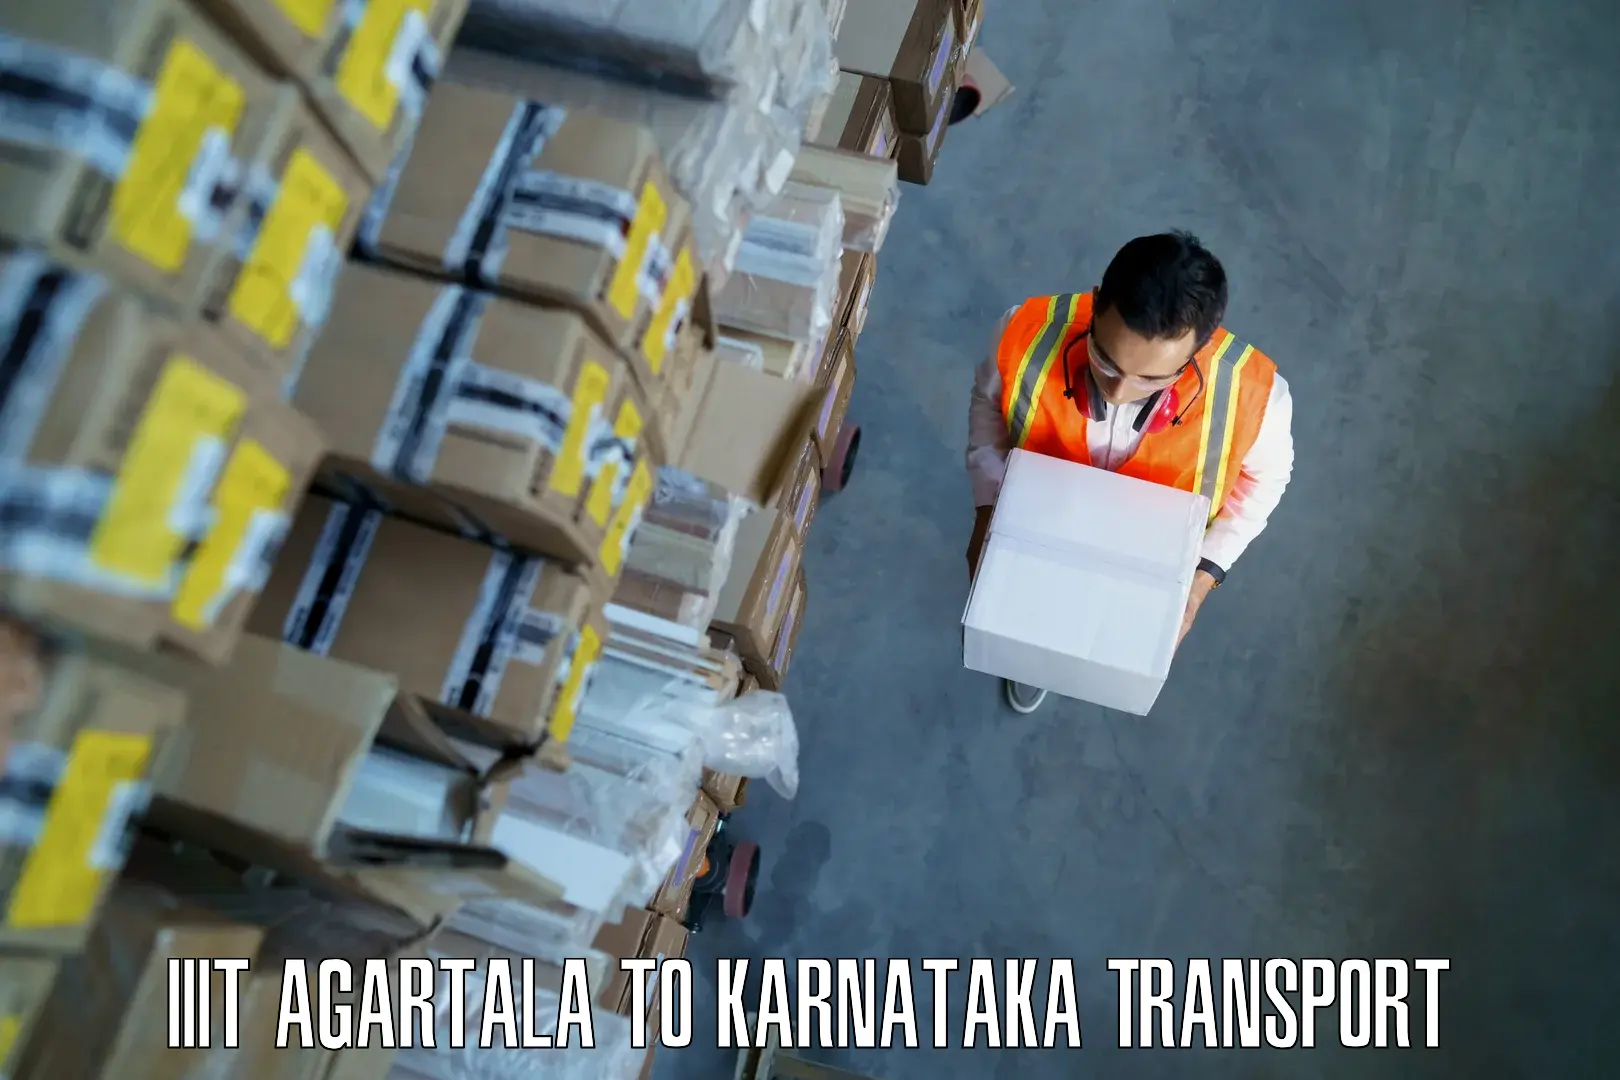 Lorry transport service IIIT Agartala to Uttara Kannada